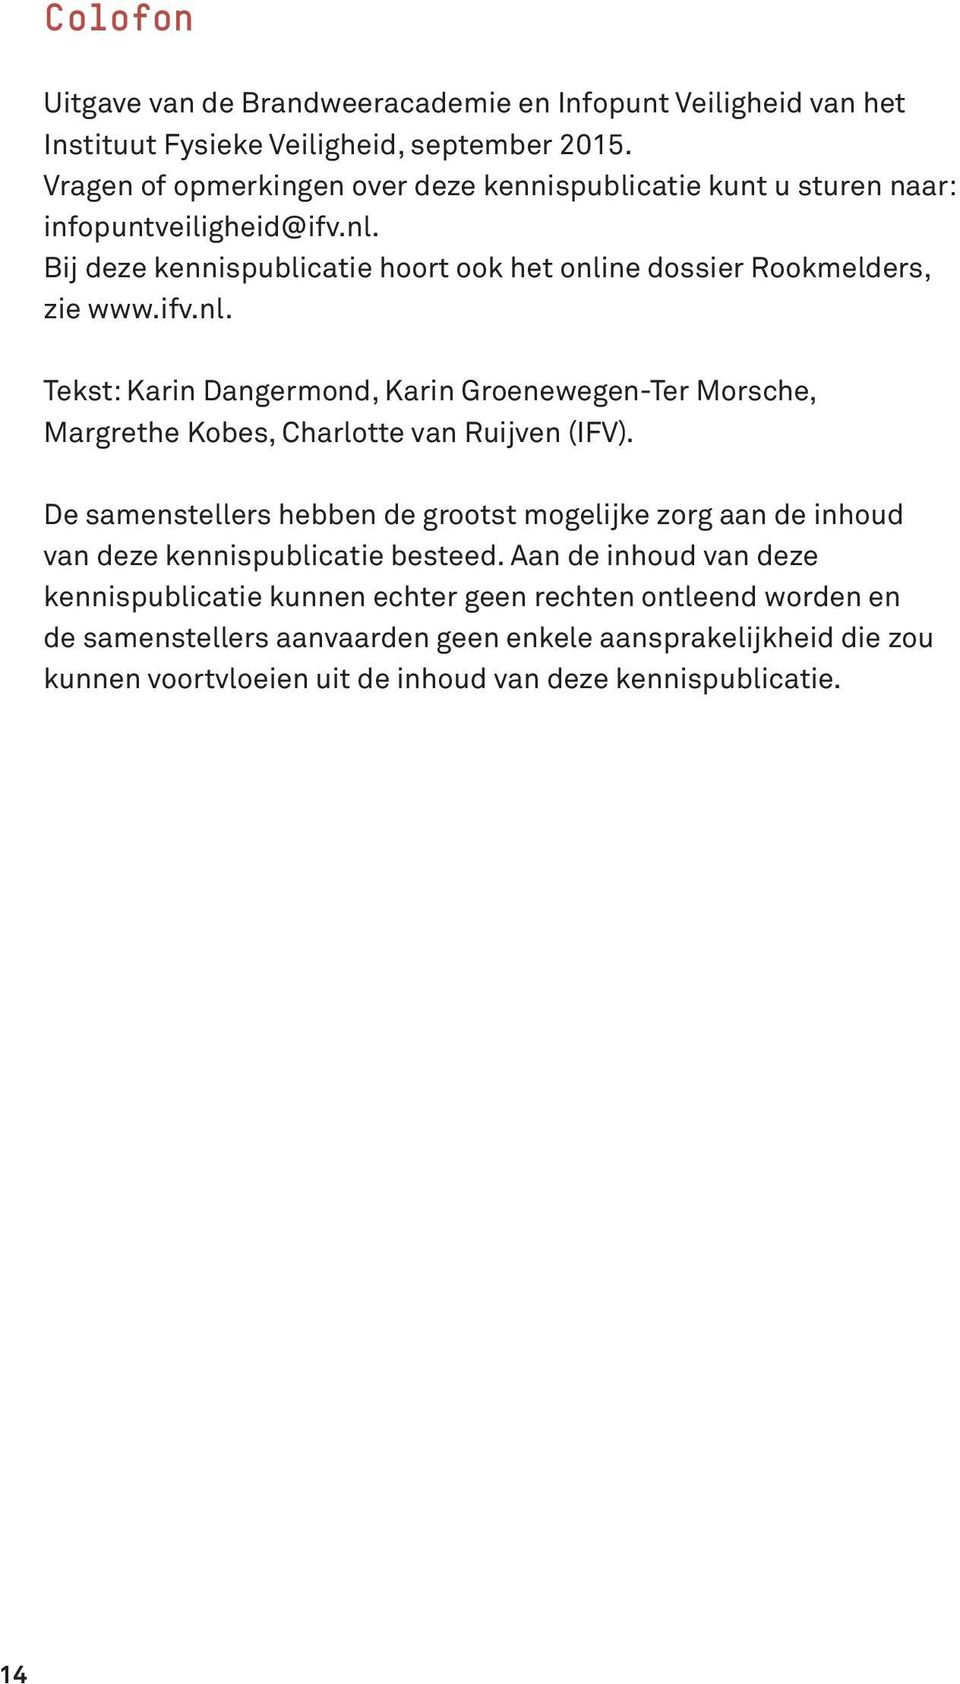 Bij deze kennispublicatie hoort ook het online dossier Rookmelders, zie www.ifv.nl. Tekst: Karin Dangermond, Karin Groenewegen-Ter Morsche, Margrethe Kobes, Charlotte van Ruijven (IFV).